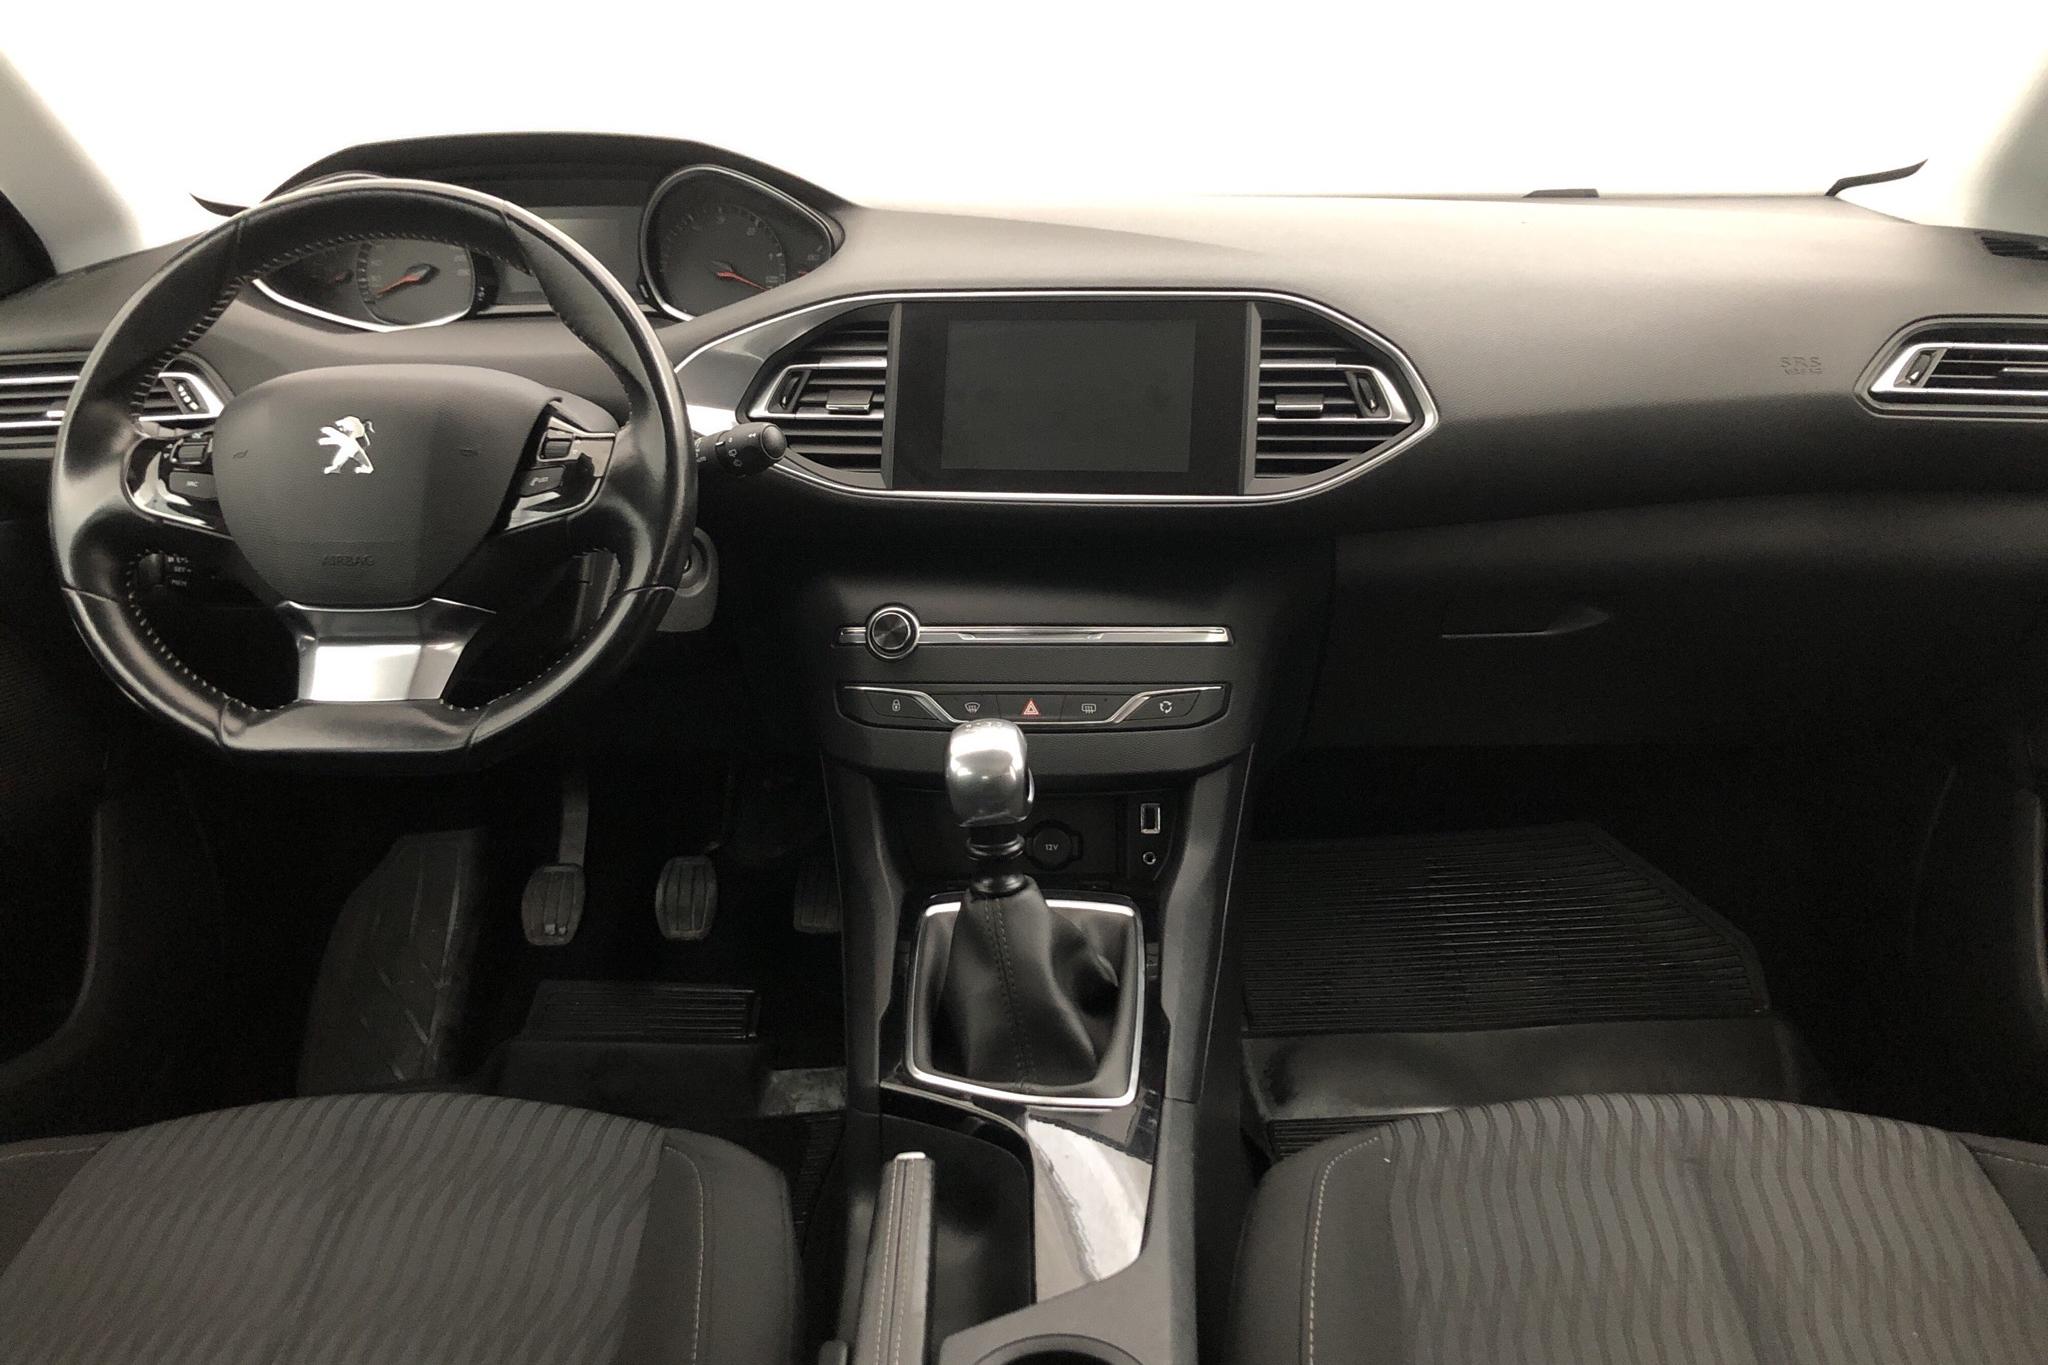 Peugeot 308 BlueHDi 5dr (120hk) - 101 000 km - Manual - white - 2017